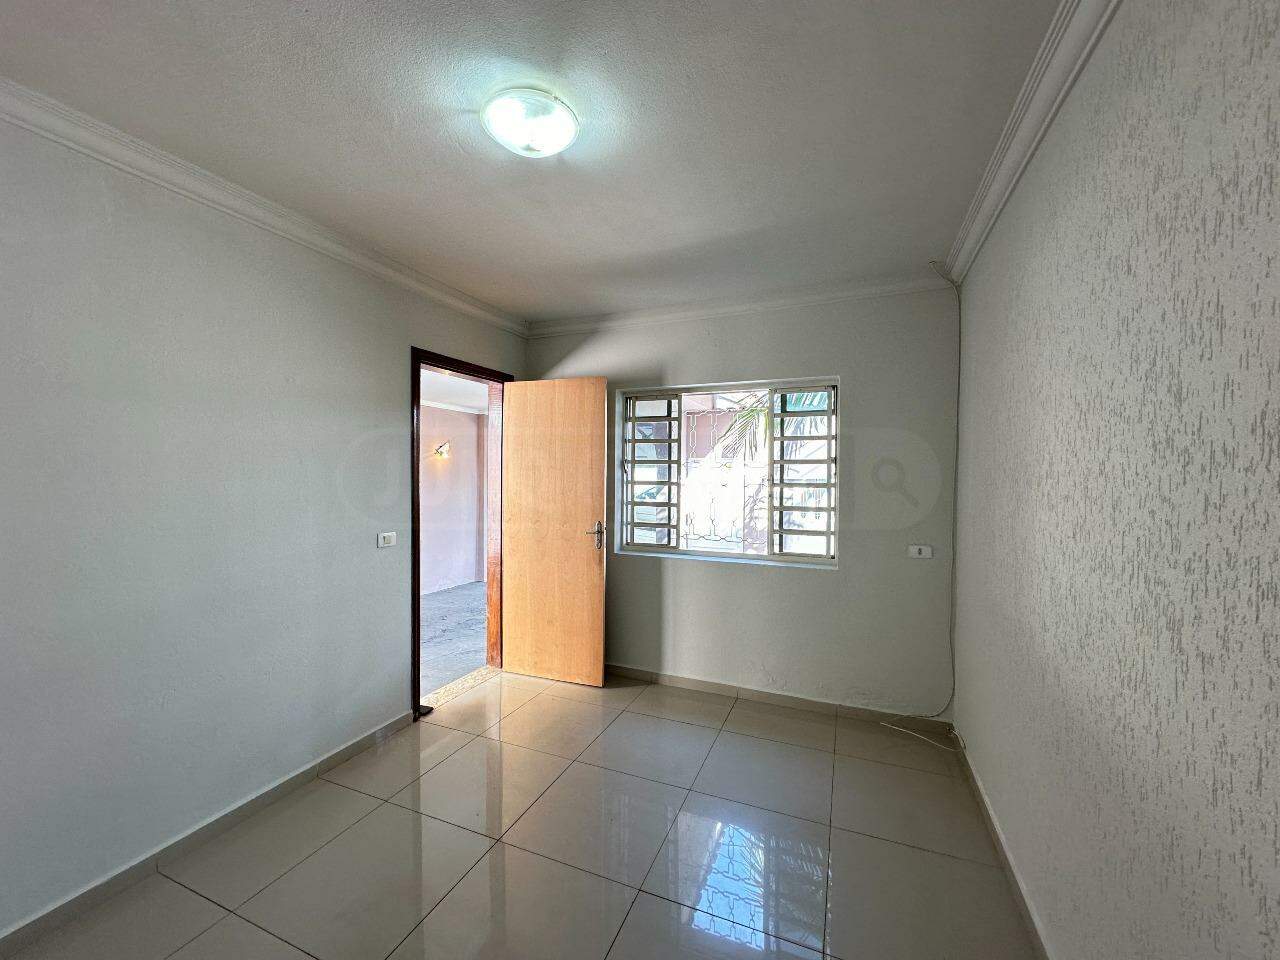 Casa à venda, 3 quartos, sendo 1 suíte, 3 vagas, no bairro Nhô Quim em Piracicaba - SP